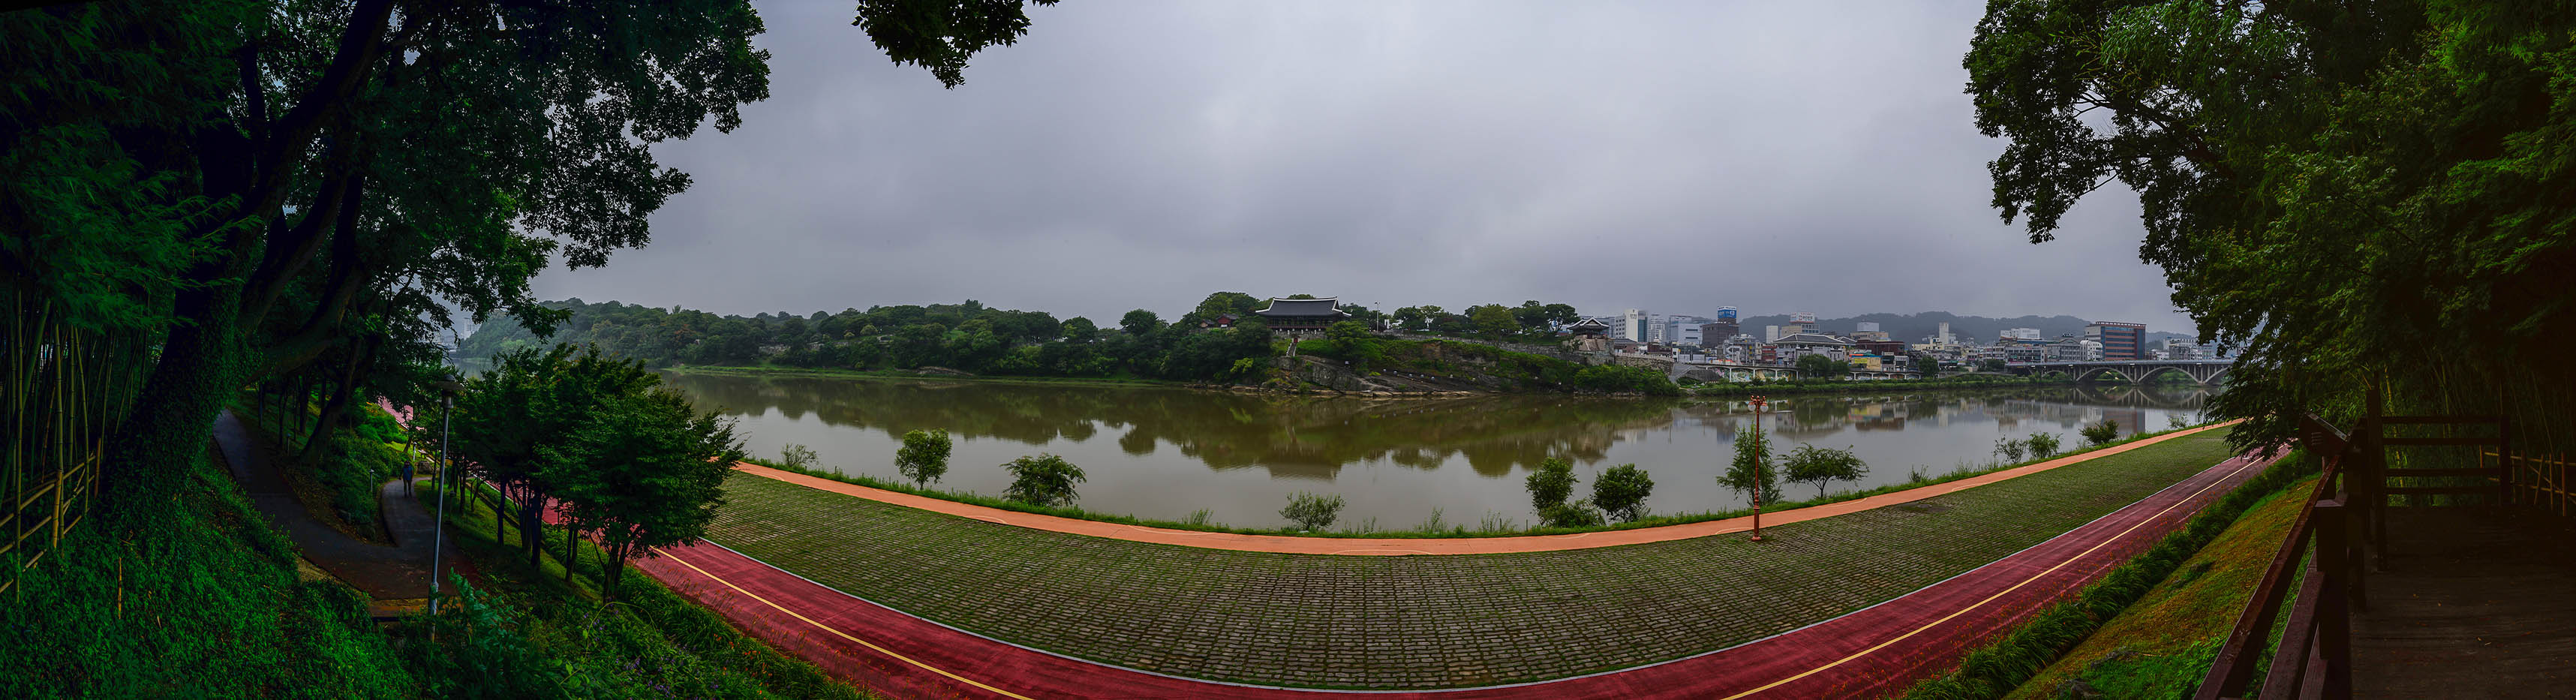 W-160712-panorama-5.jpg